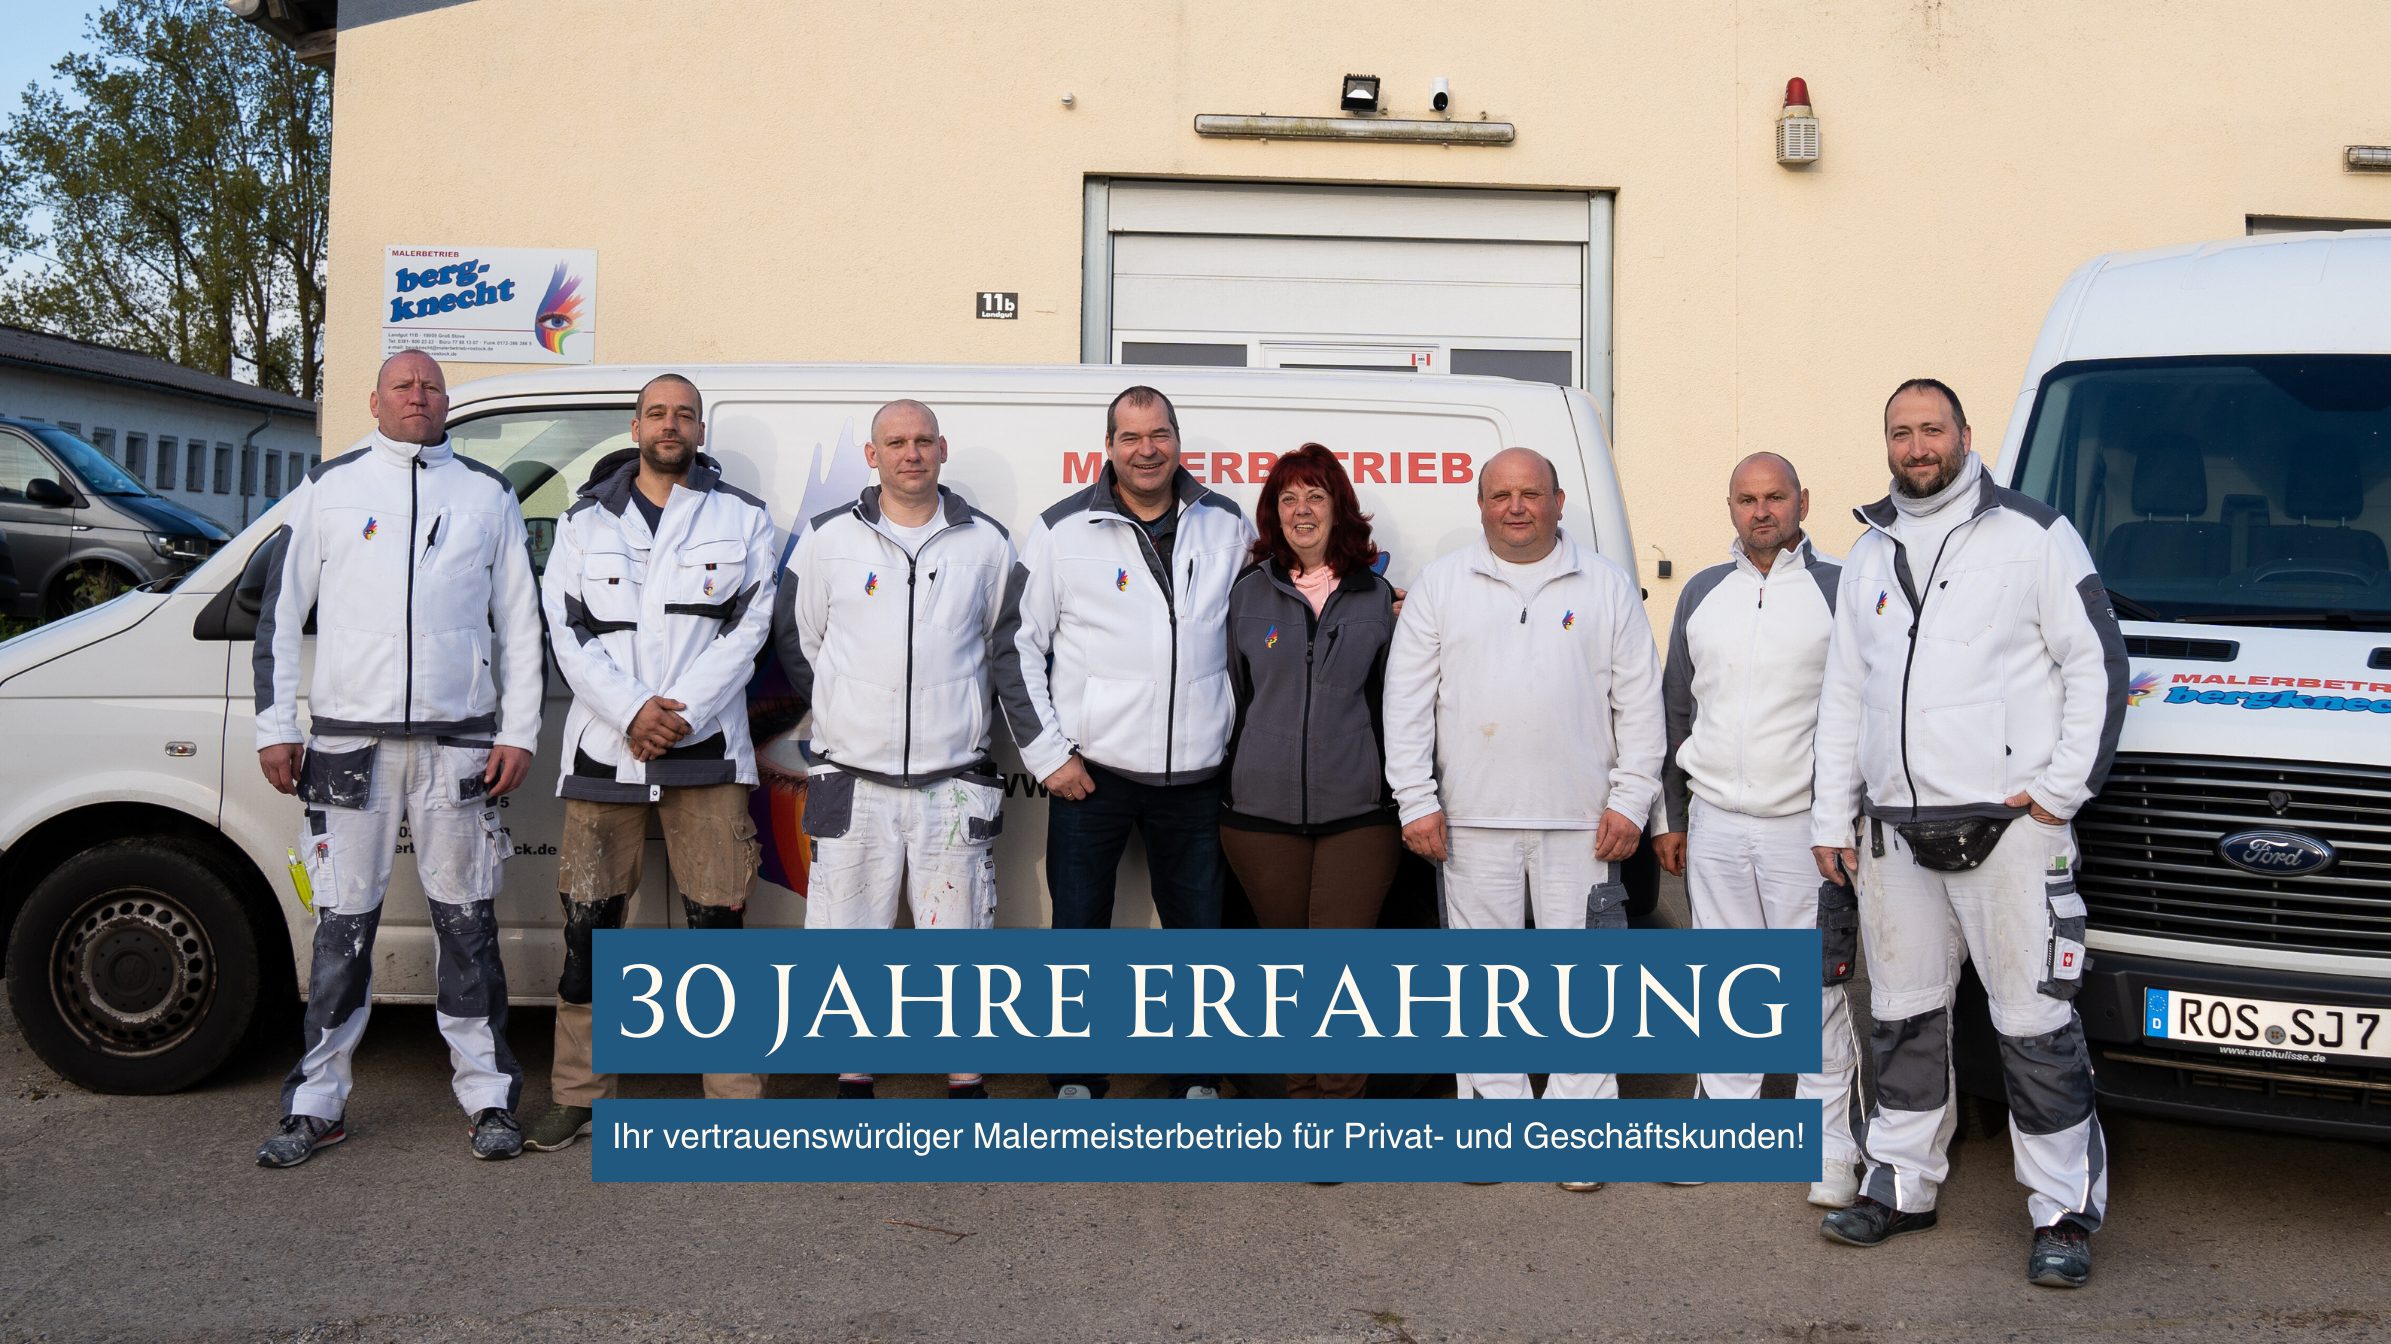 30 Jahre Erfahrung – Ihr vertrauenswürdiger Malermeisterbetrieb für Privat- und Geschäftskunden!